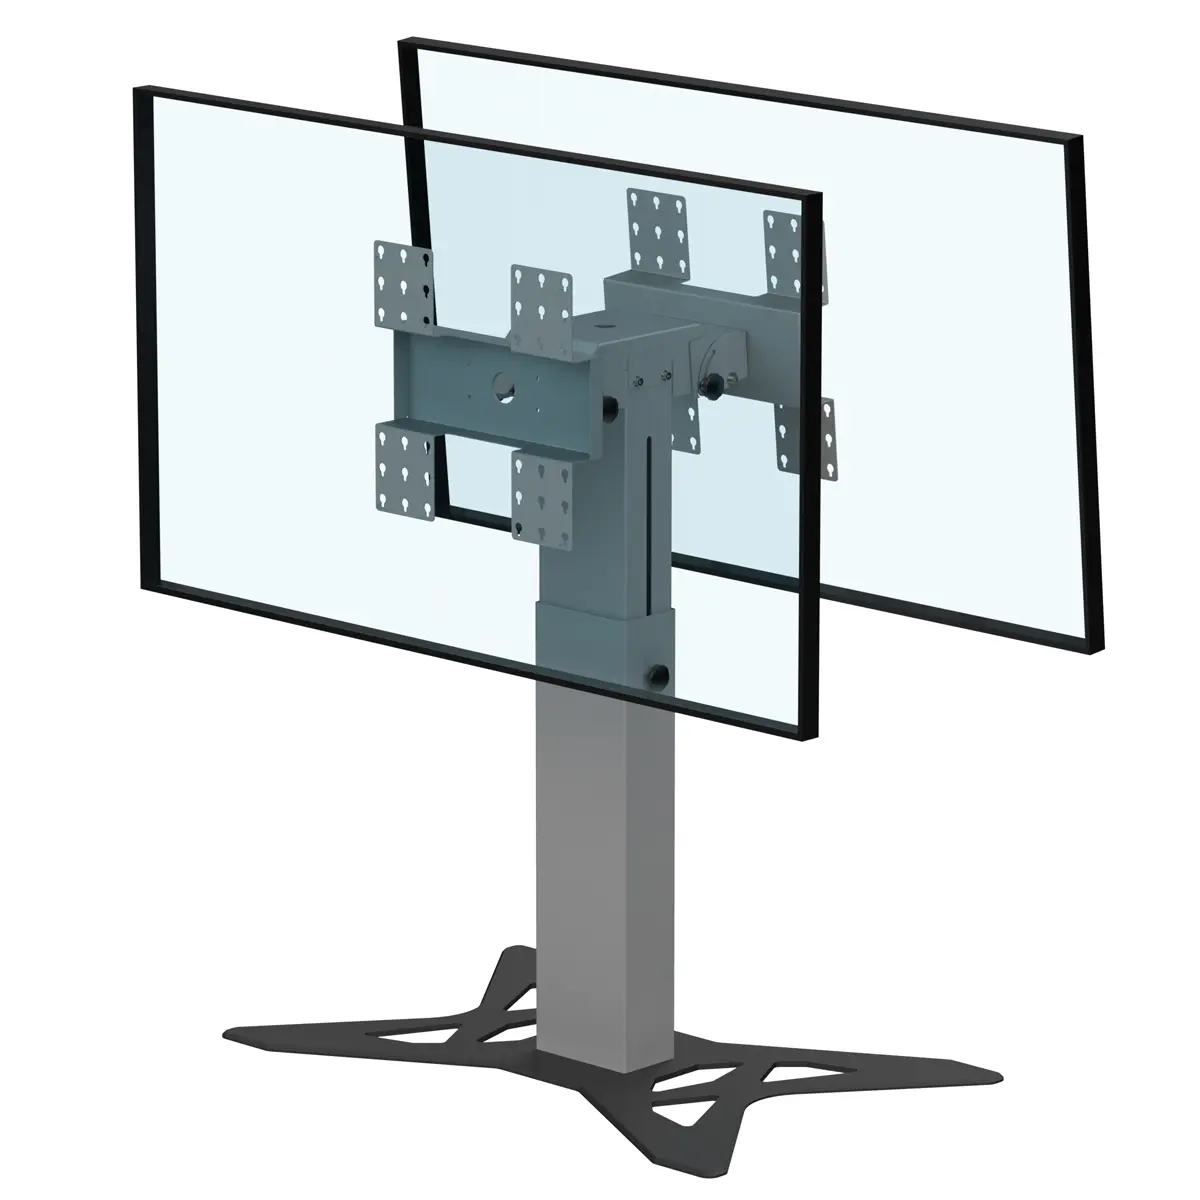 Support double écrans bas retour écran hauteur réglable 800-1100mm réglable en hauteur avec embase type A